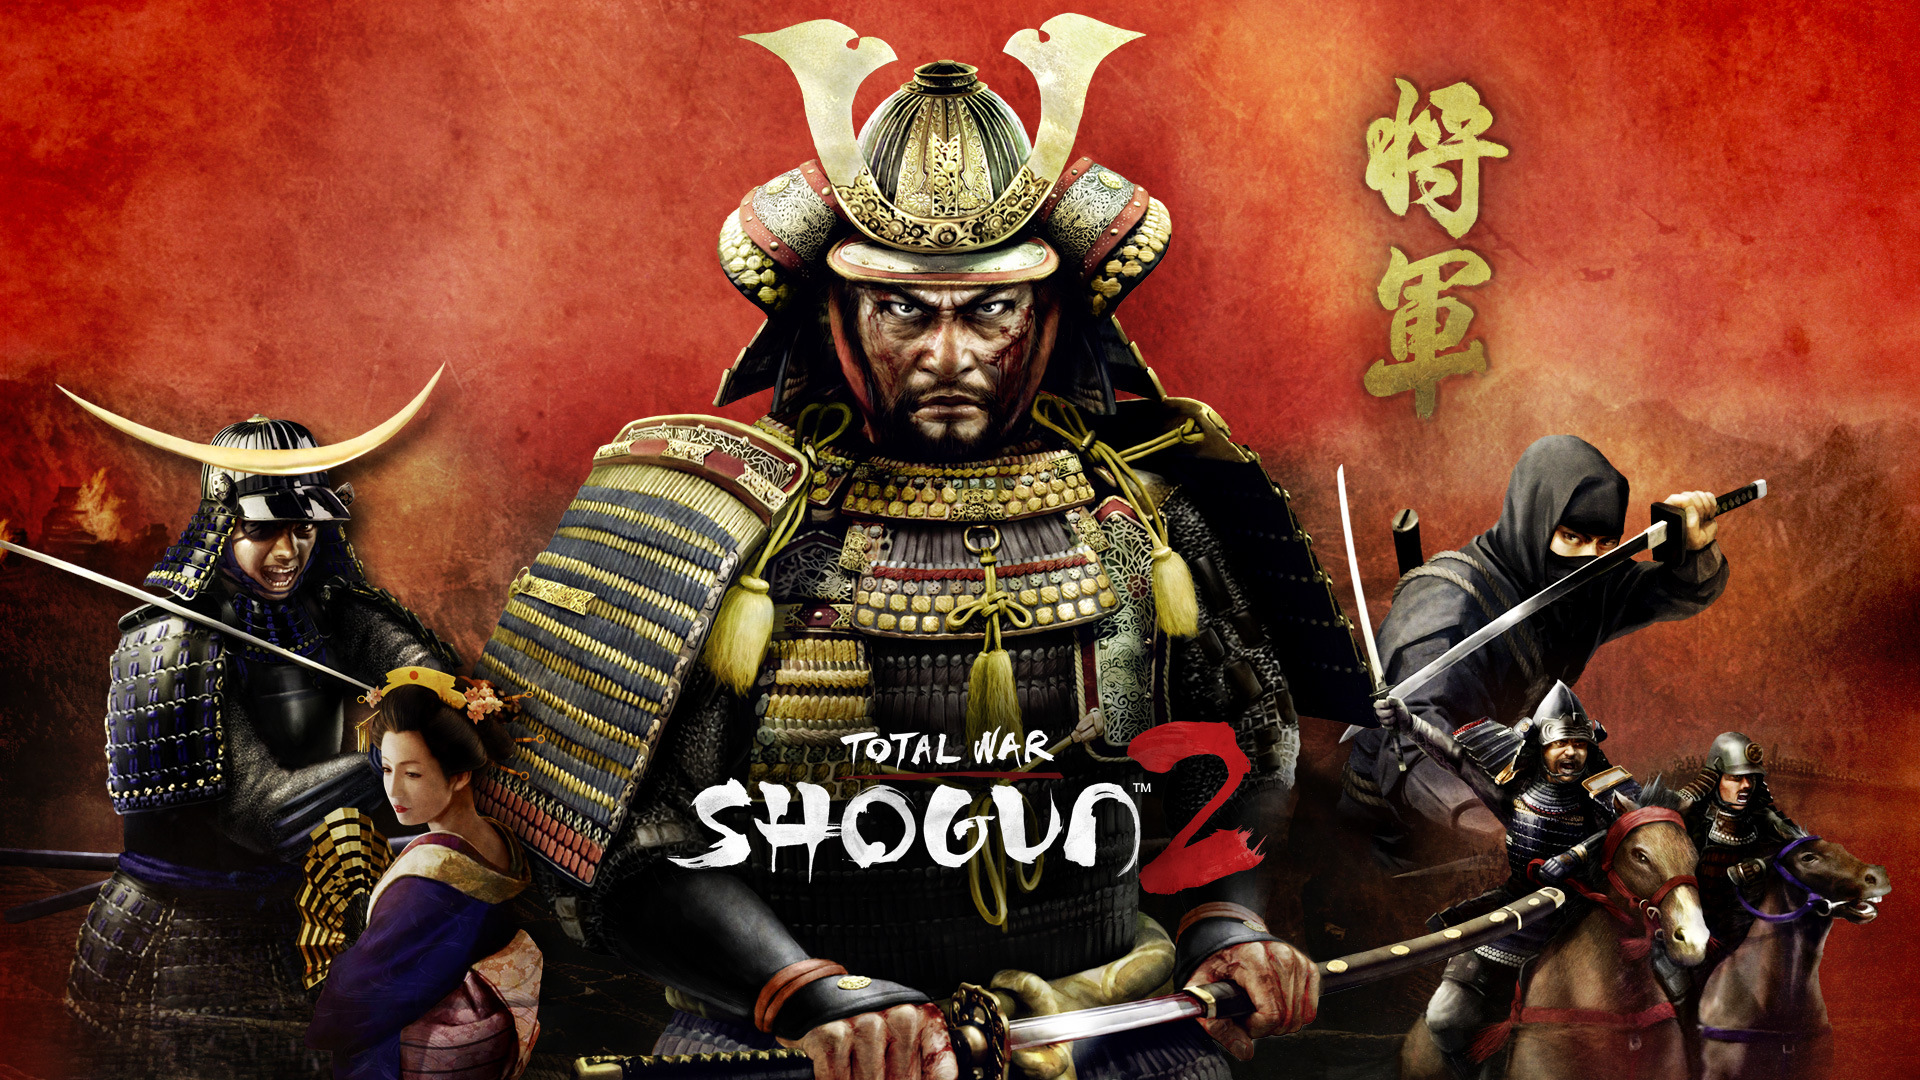 total war shogun 2 steam syncing